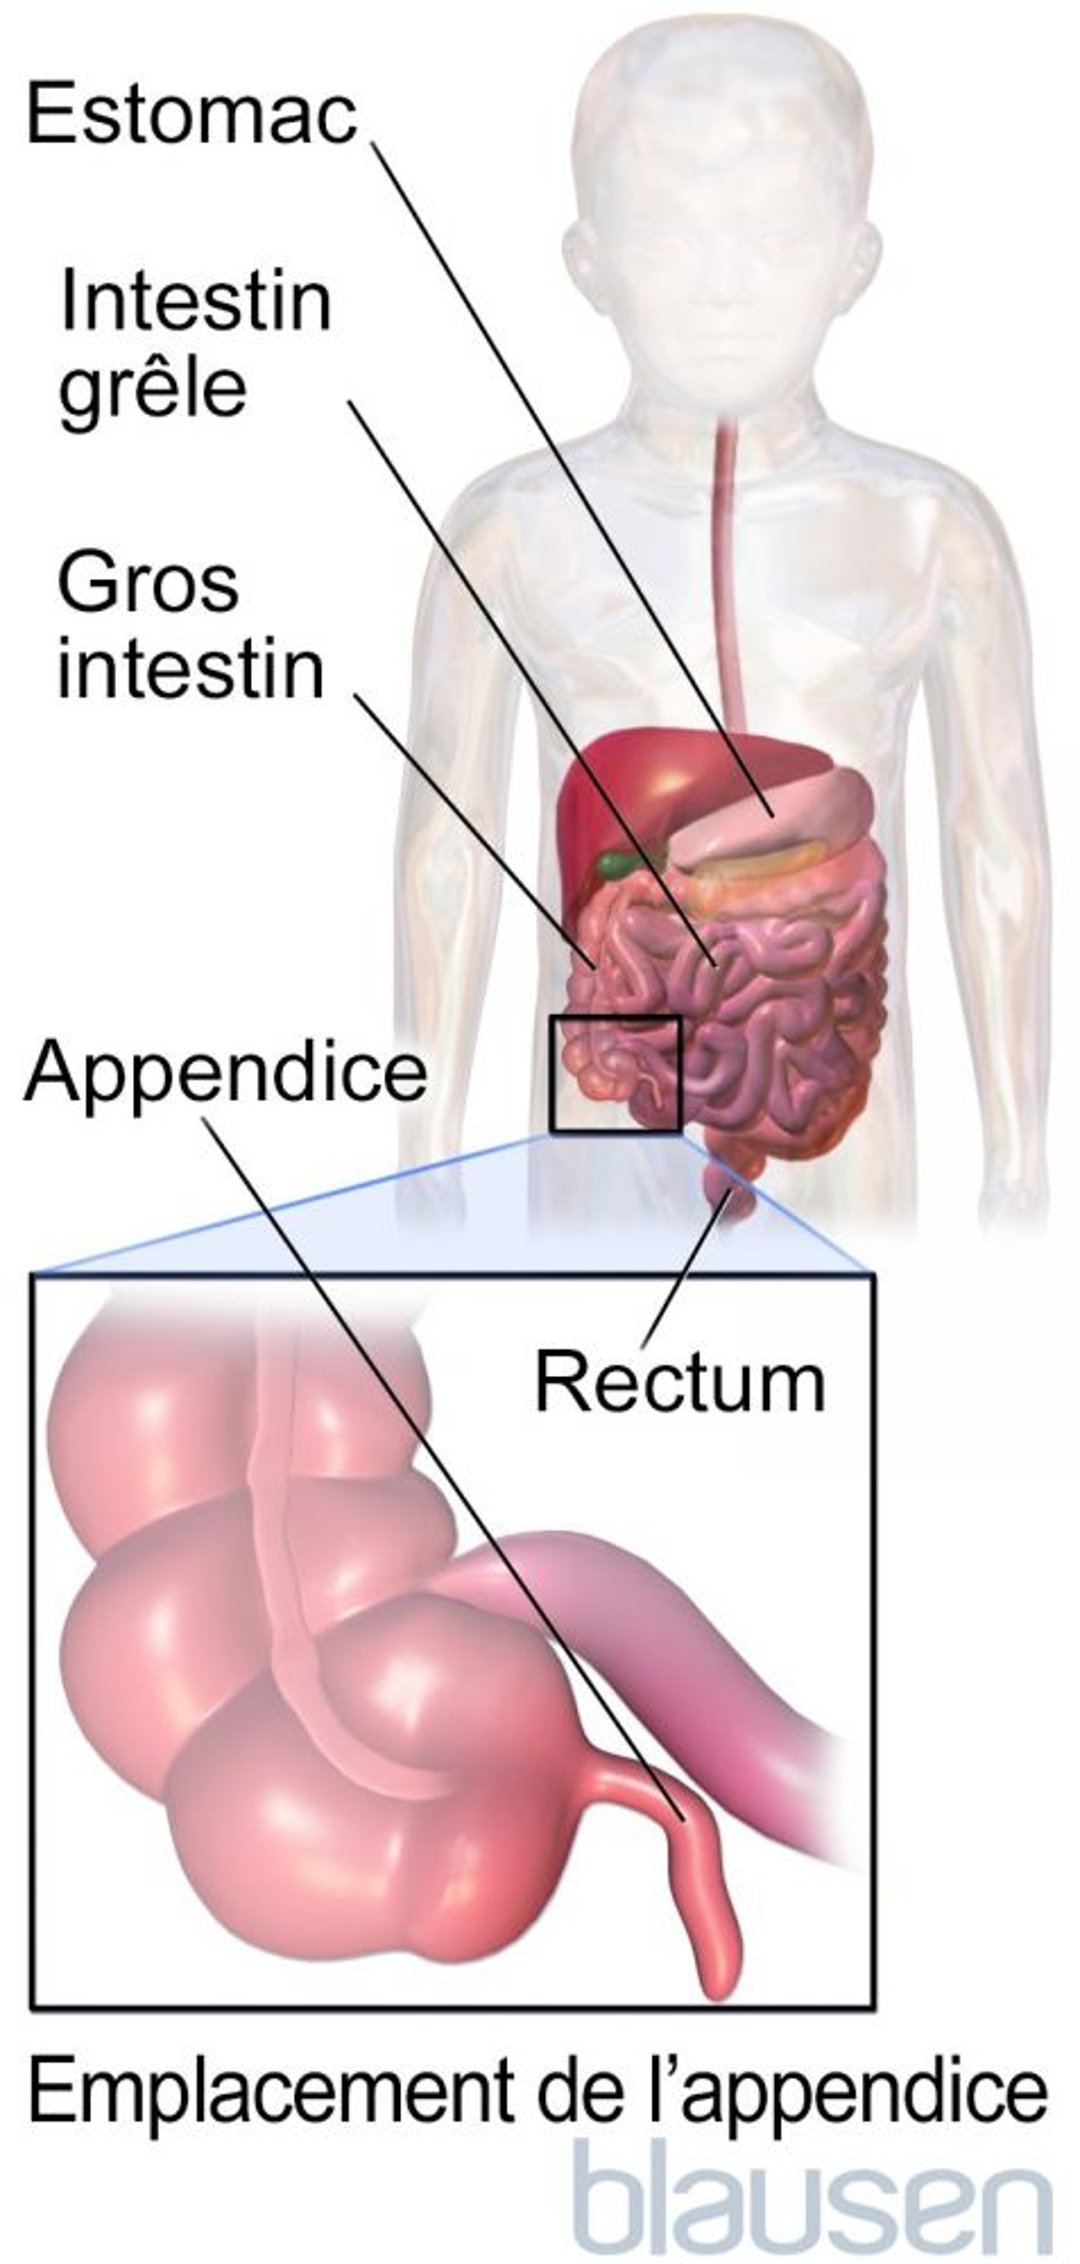 Emplacement de l’appendice